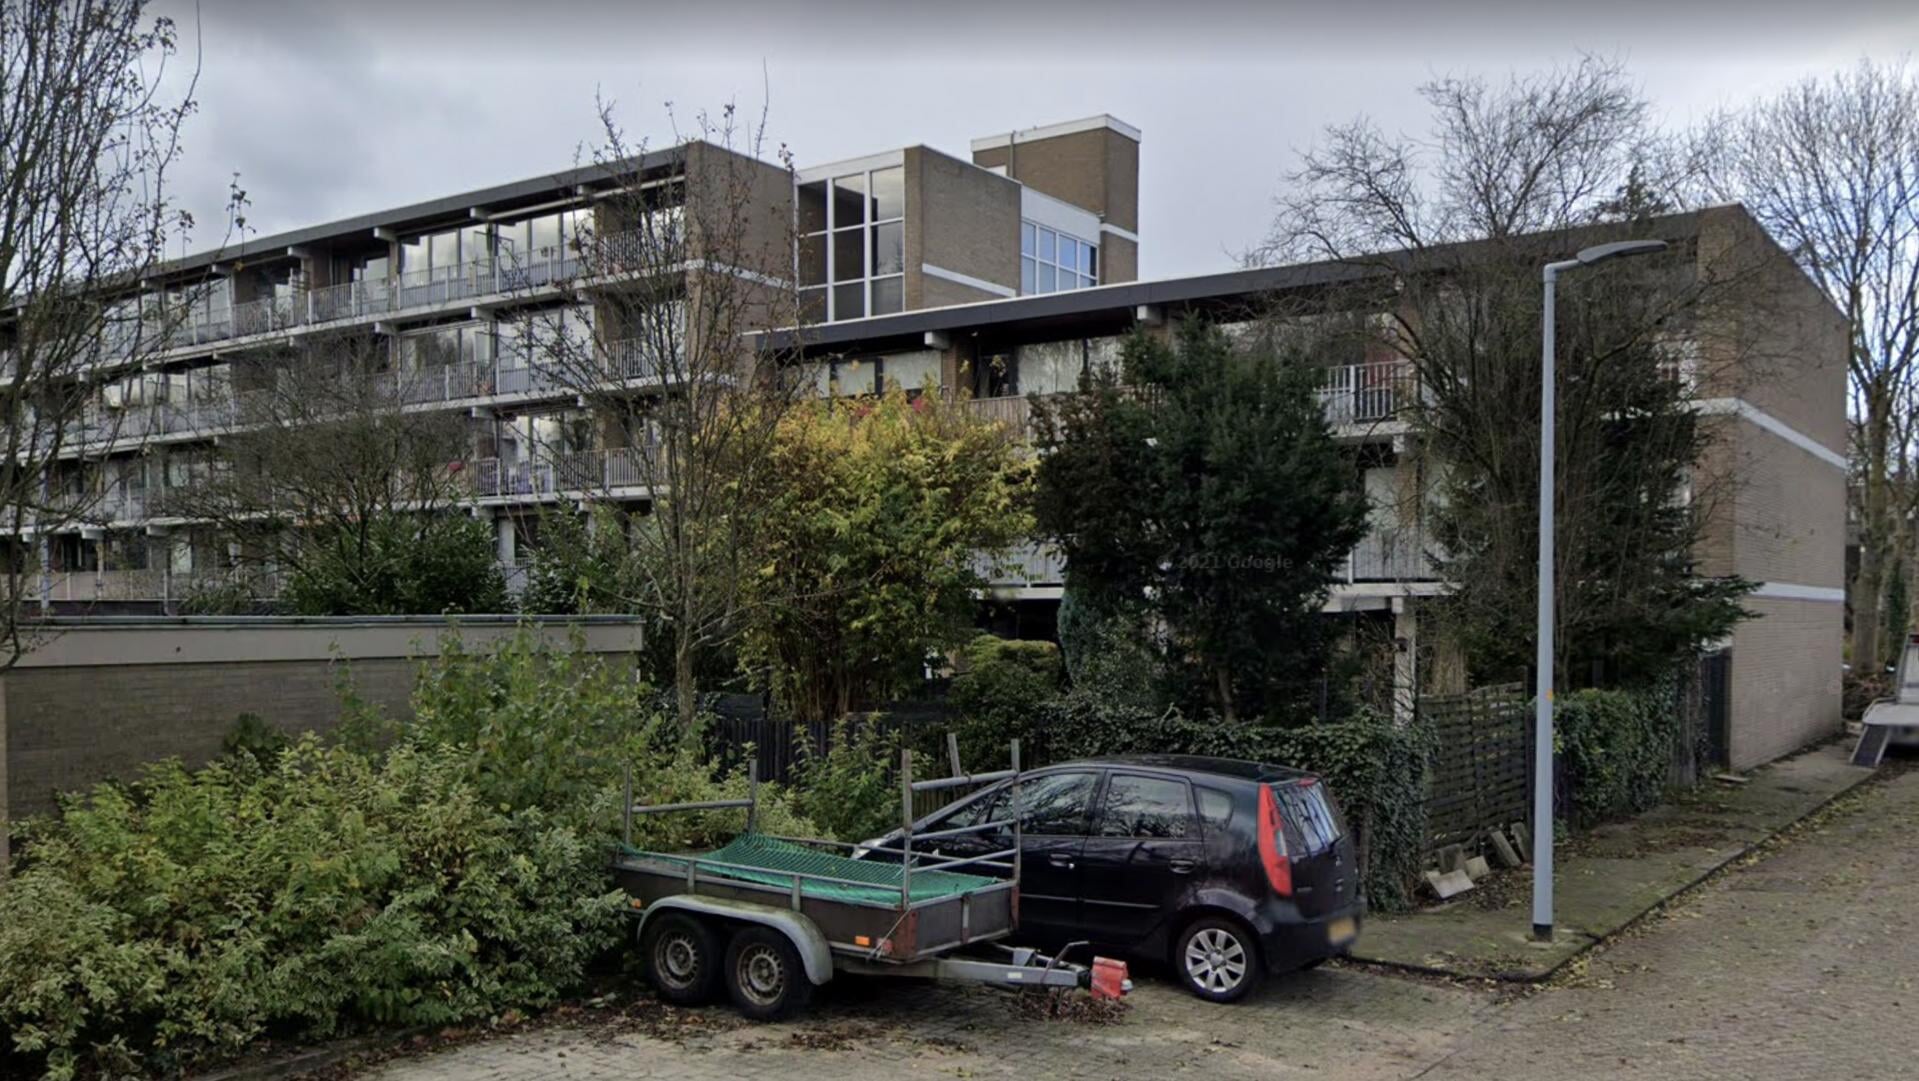 Zeven woningen van het complex aan de Meidoornweg hebben van de gemeente de boodschap gekregen dat een deel van hun tuin zich op gemeentegrond zou bevinden.